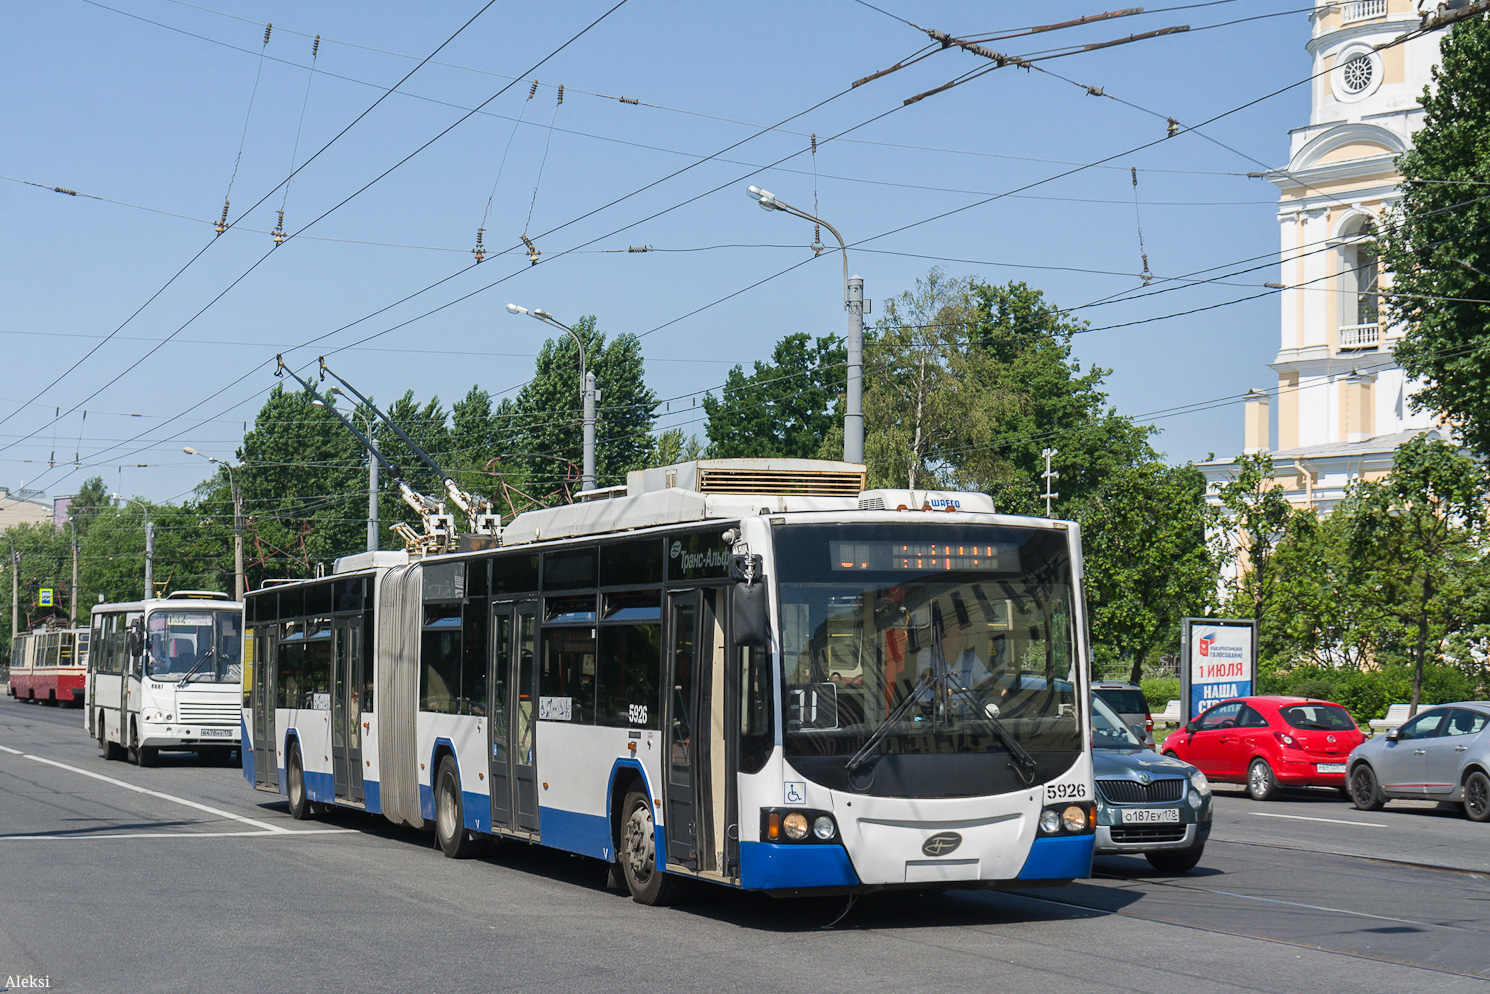 Szentpétervár, VMZ-62151 “Premier” — 5926